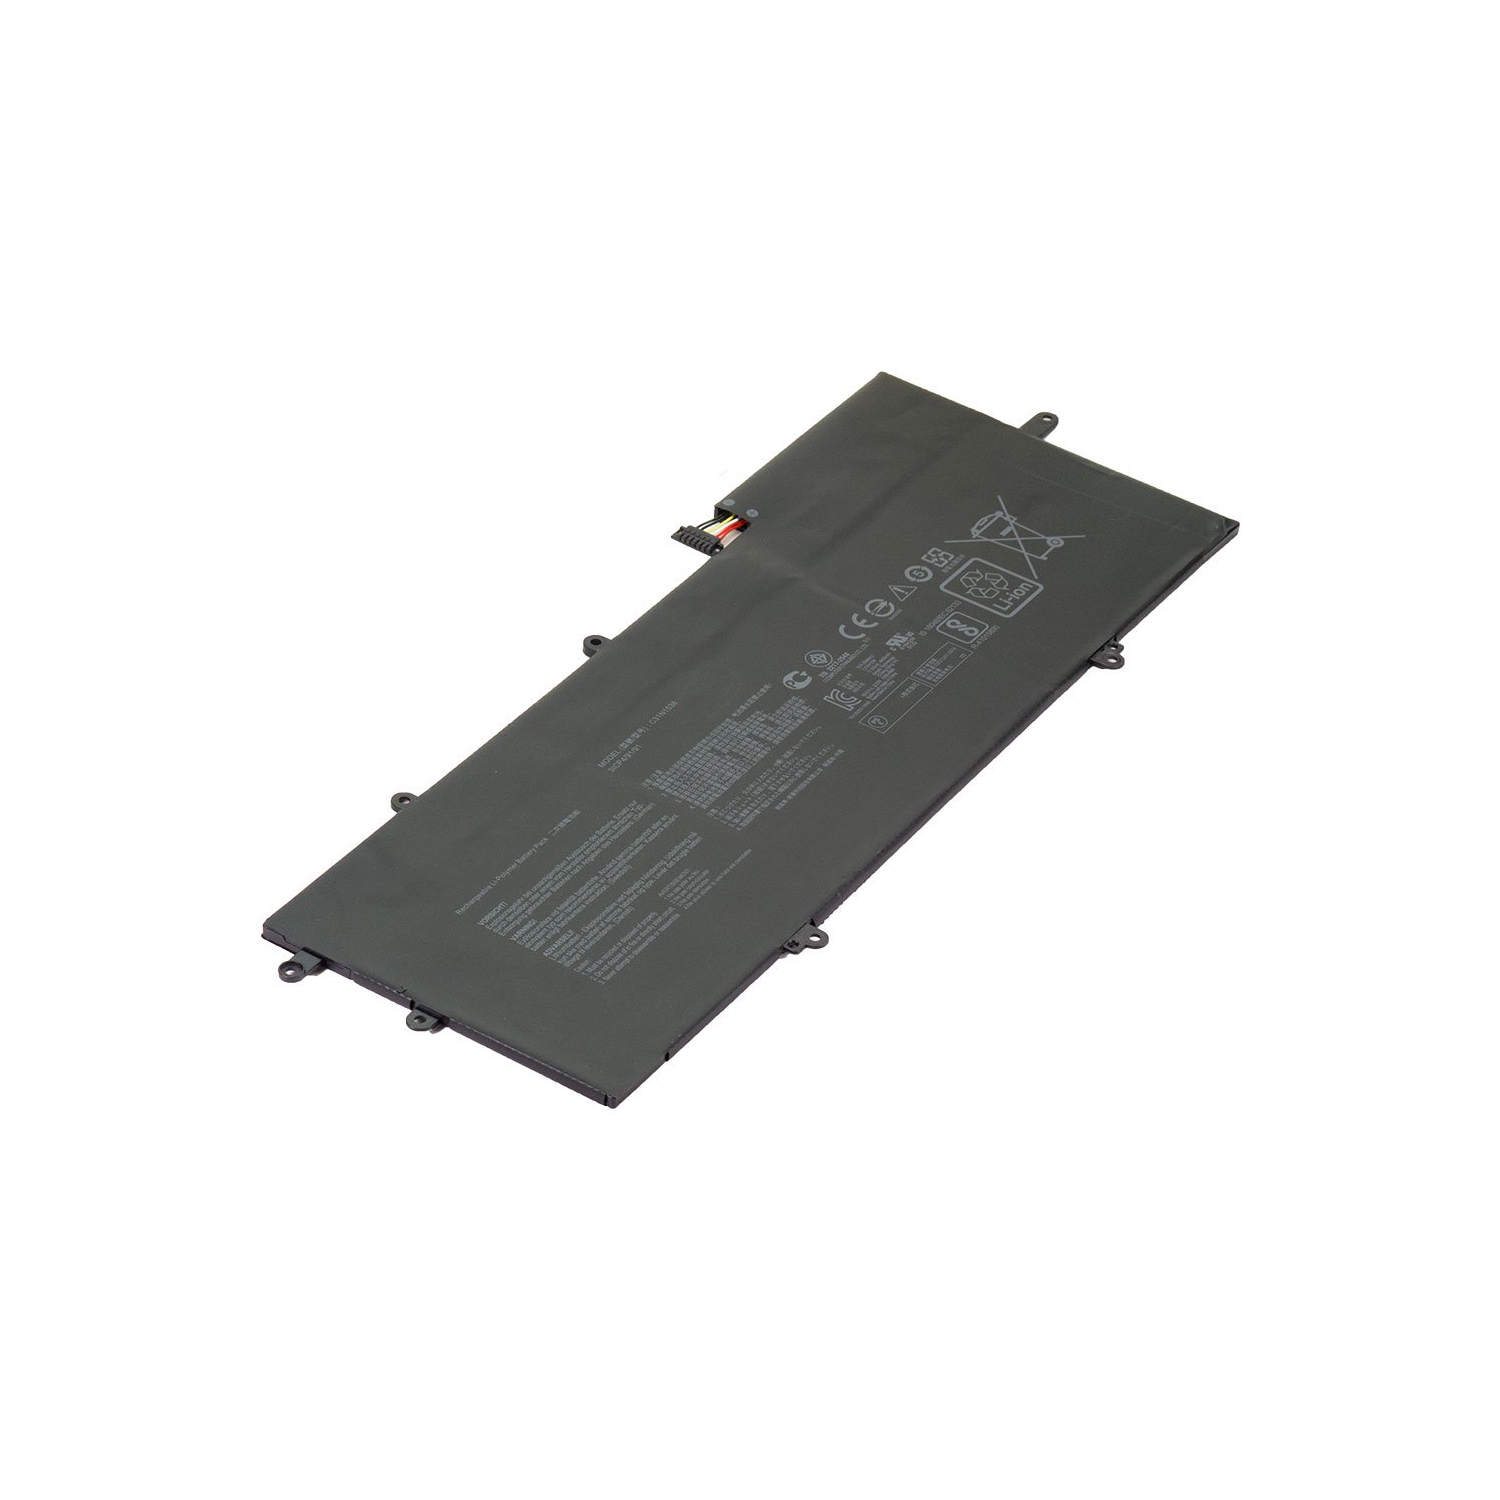 BattDepot: Brand New Laptop Battery for Asus ZenBook Flip UX360UA, 0B20002080000, 0B200-02080000, C31N1538